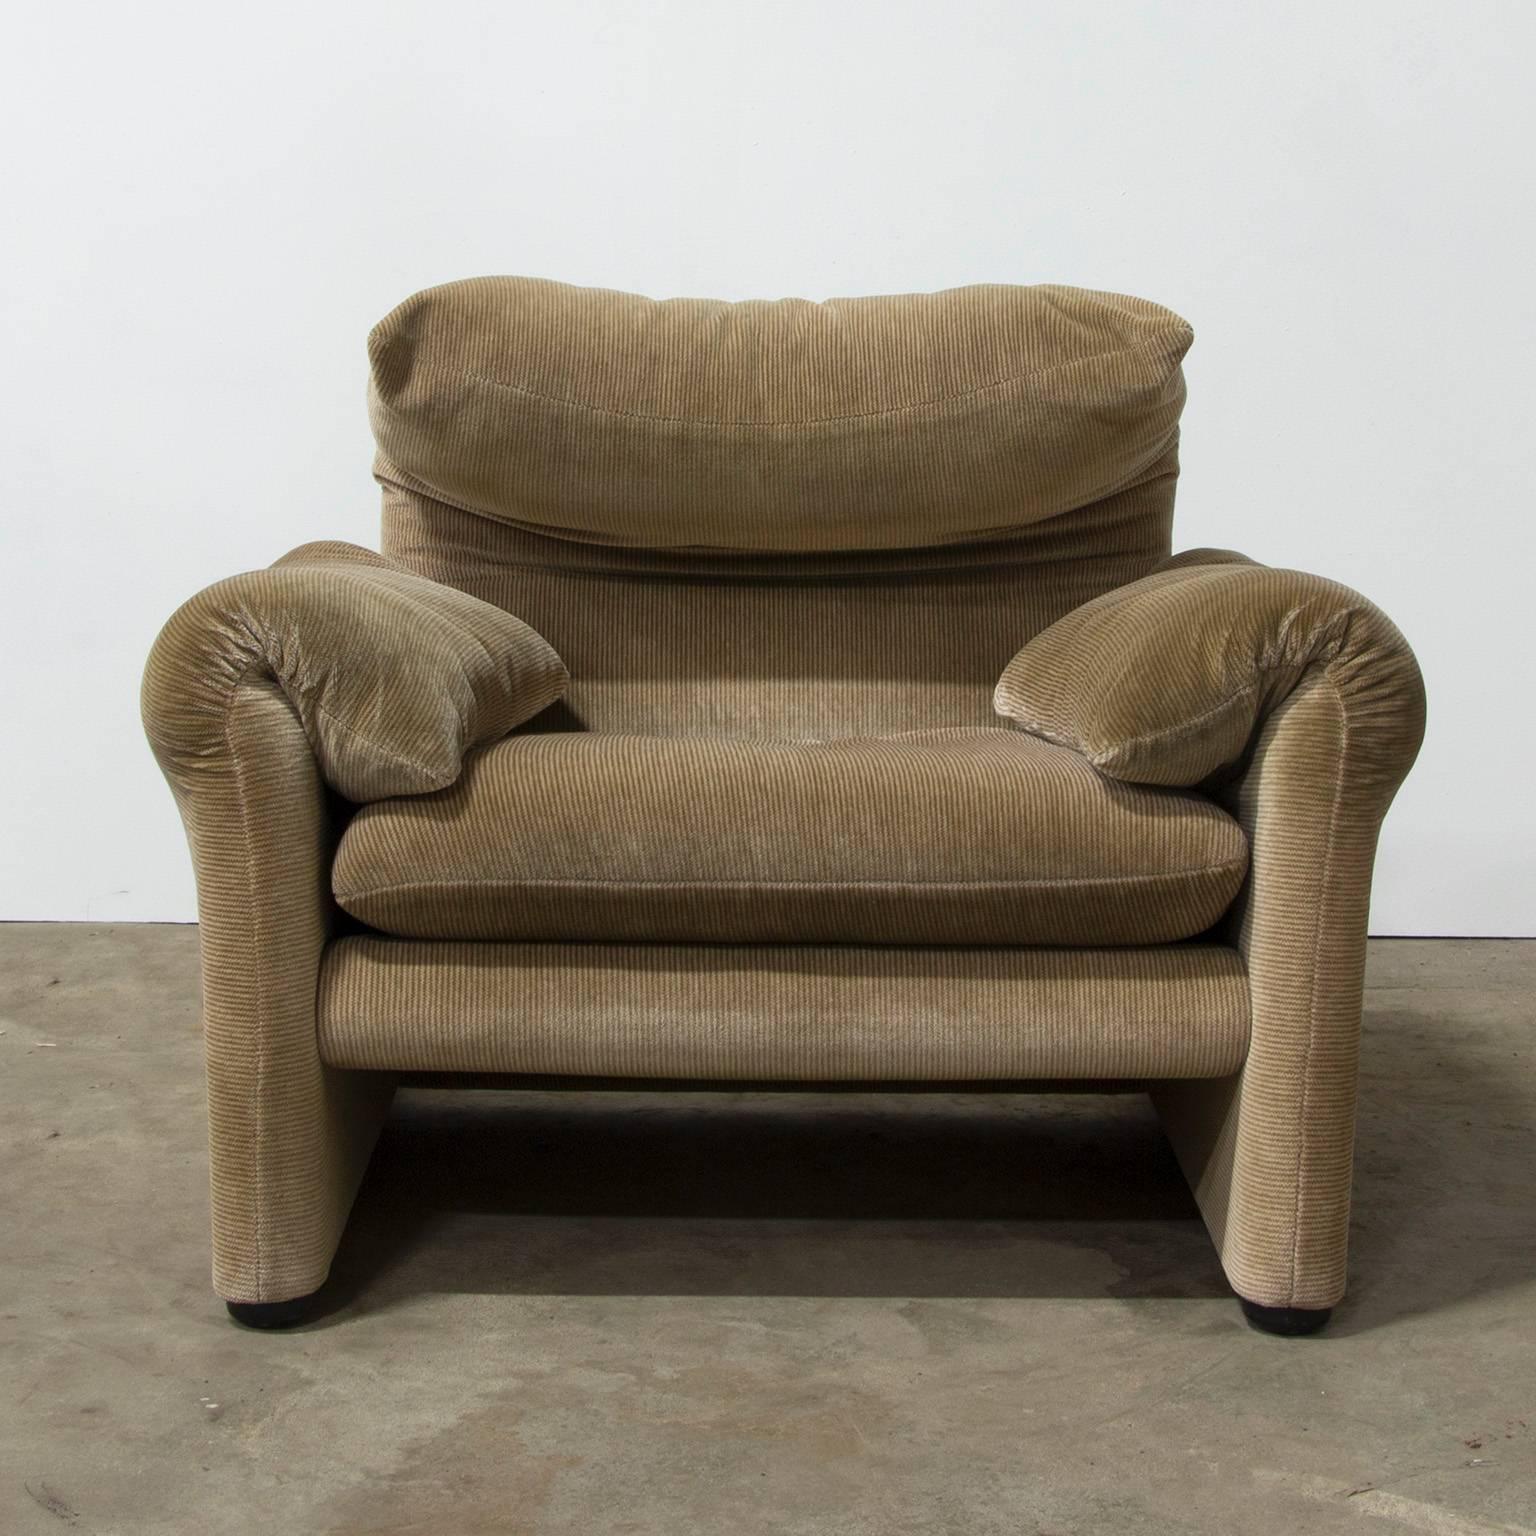 Late 20th Century 1973, Vico Magistretti for Cassina, Maralunga Chair in Original Fabric